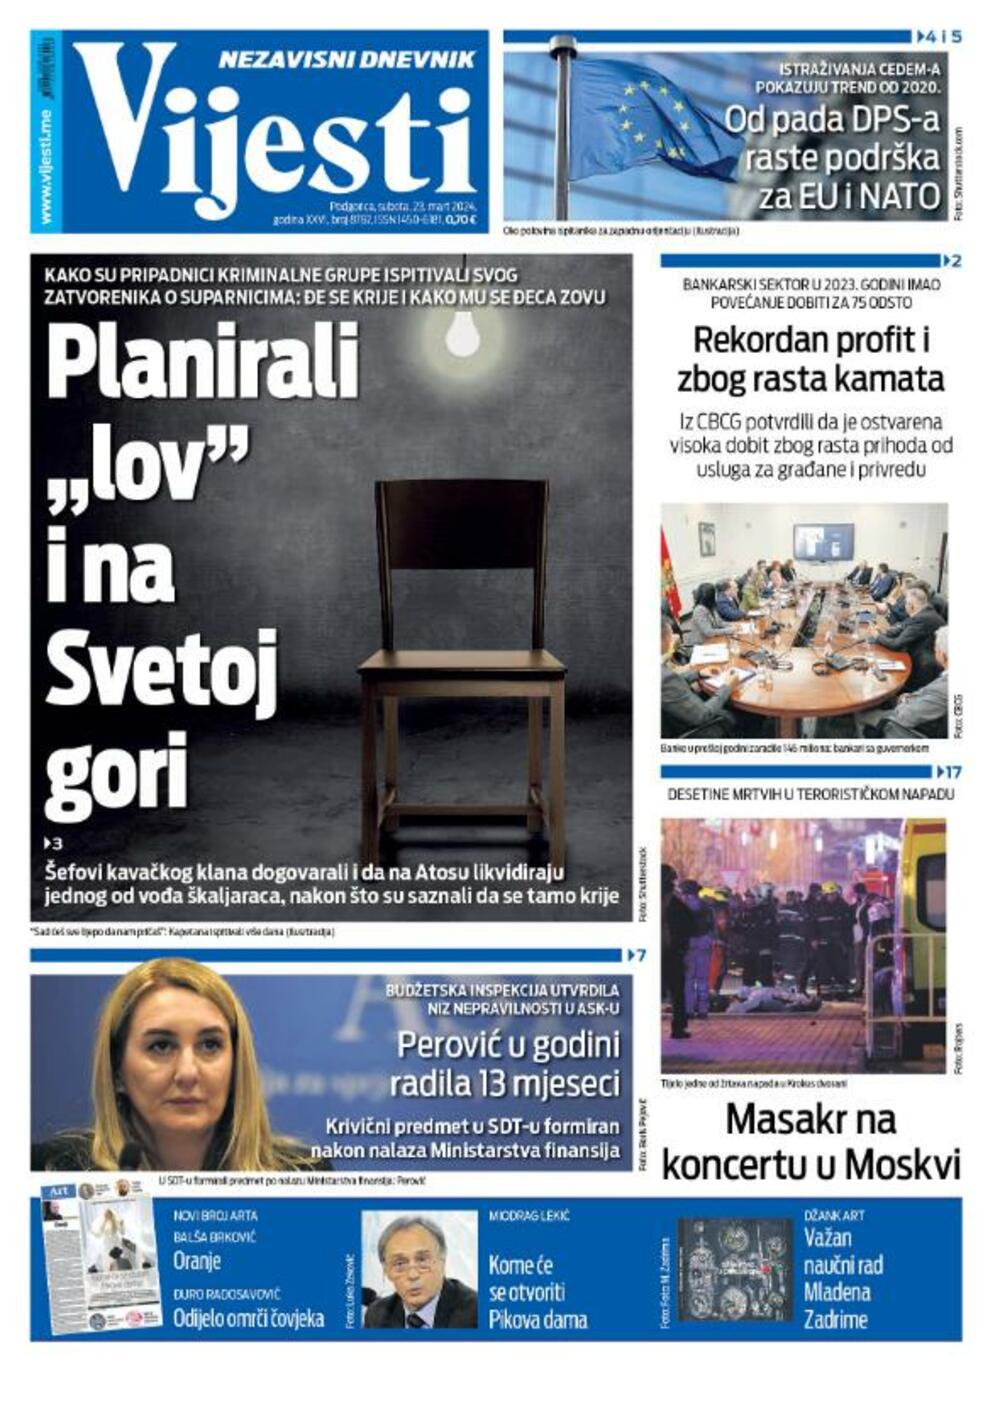 Naslovna strana "Vijesti" za 23. mart 2024., Foto: Vijesti